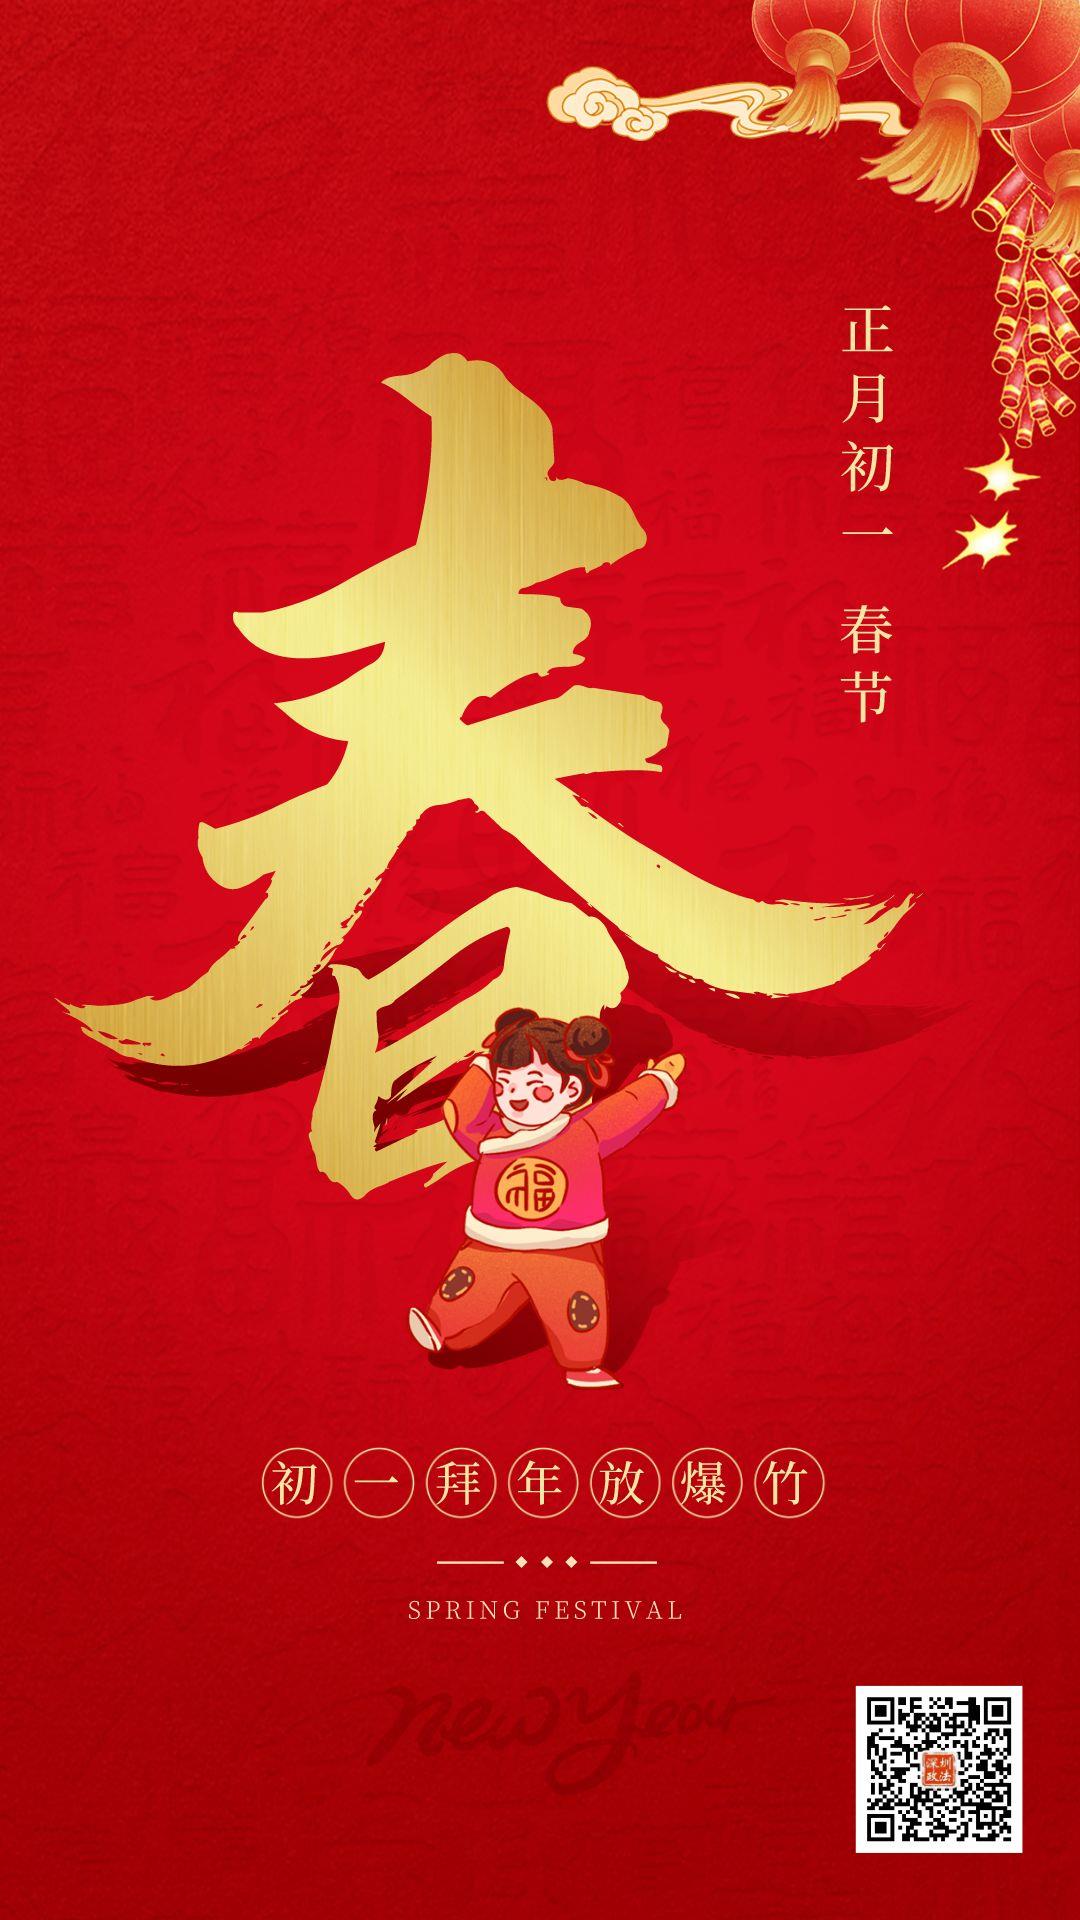 中国春节初一到初七的风俗、中国春节初一到初七的风俗是什么